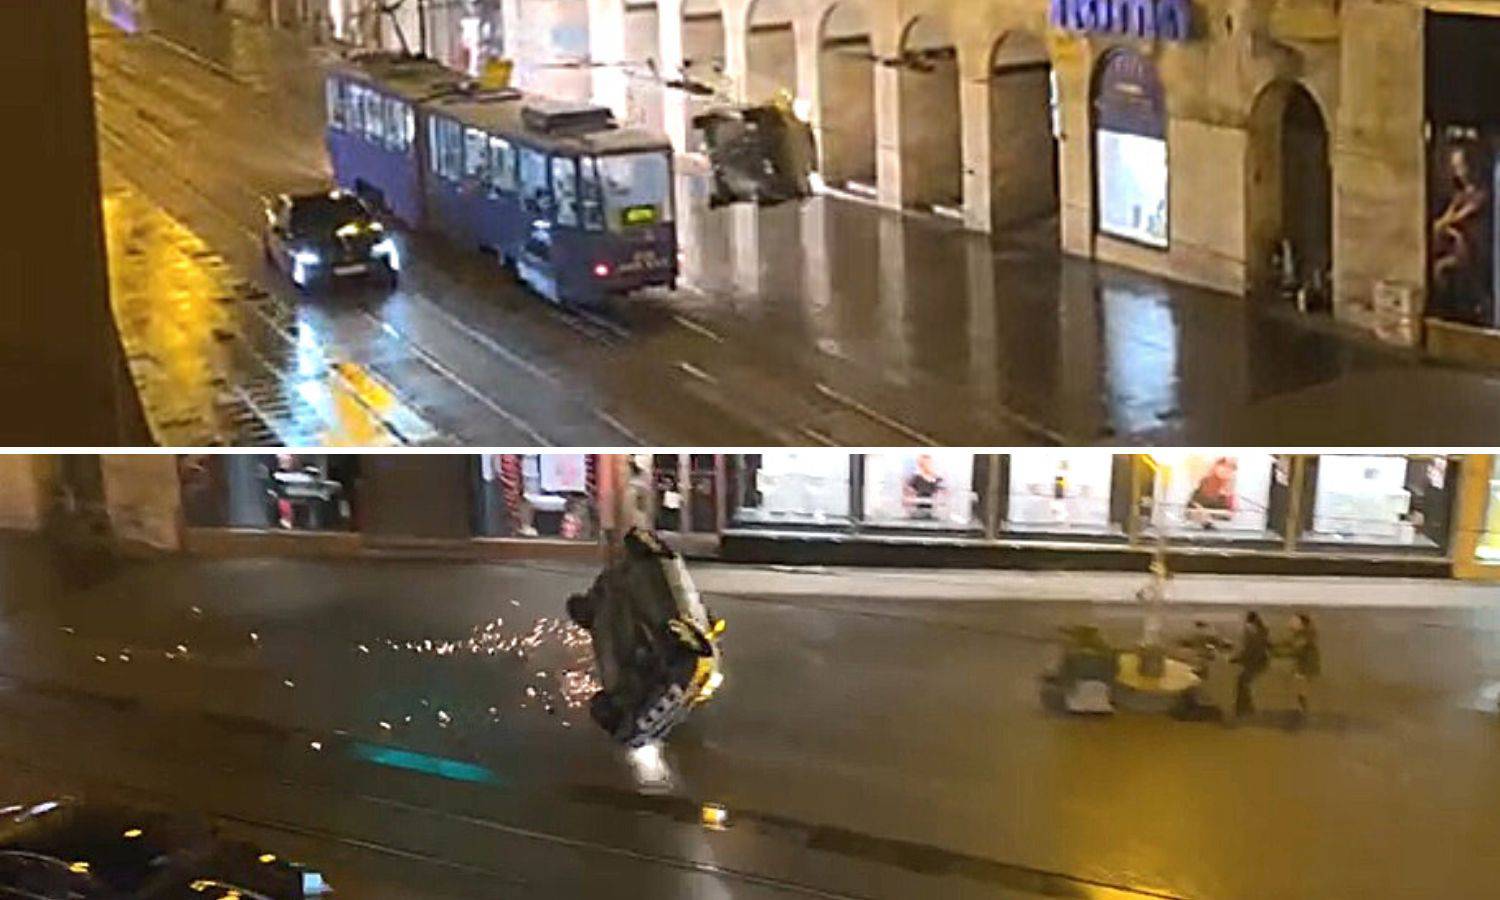 Snimka iz Zagreba! Jure Ilicom, eksplozije, iskre, auto na krovu: 'Strah me, pa tamo mi kći hoda'